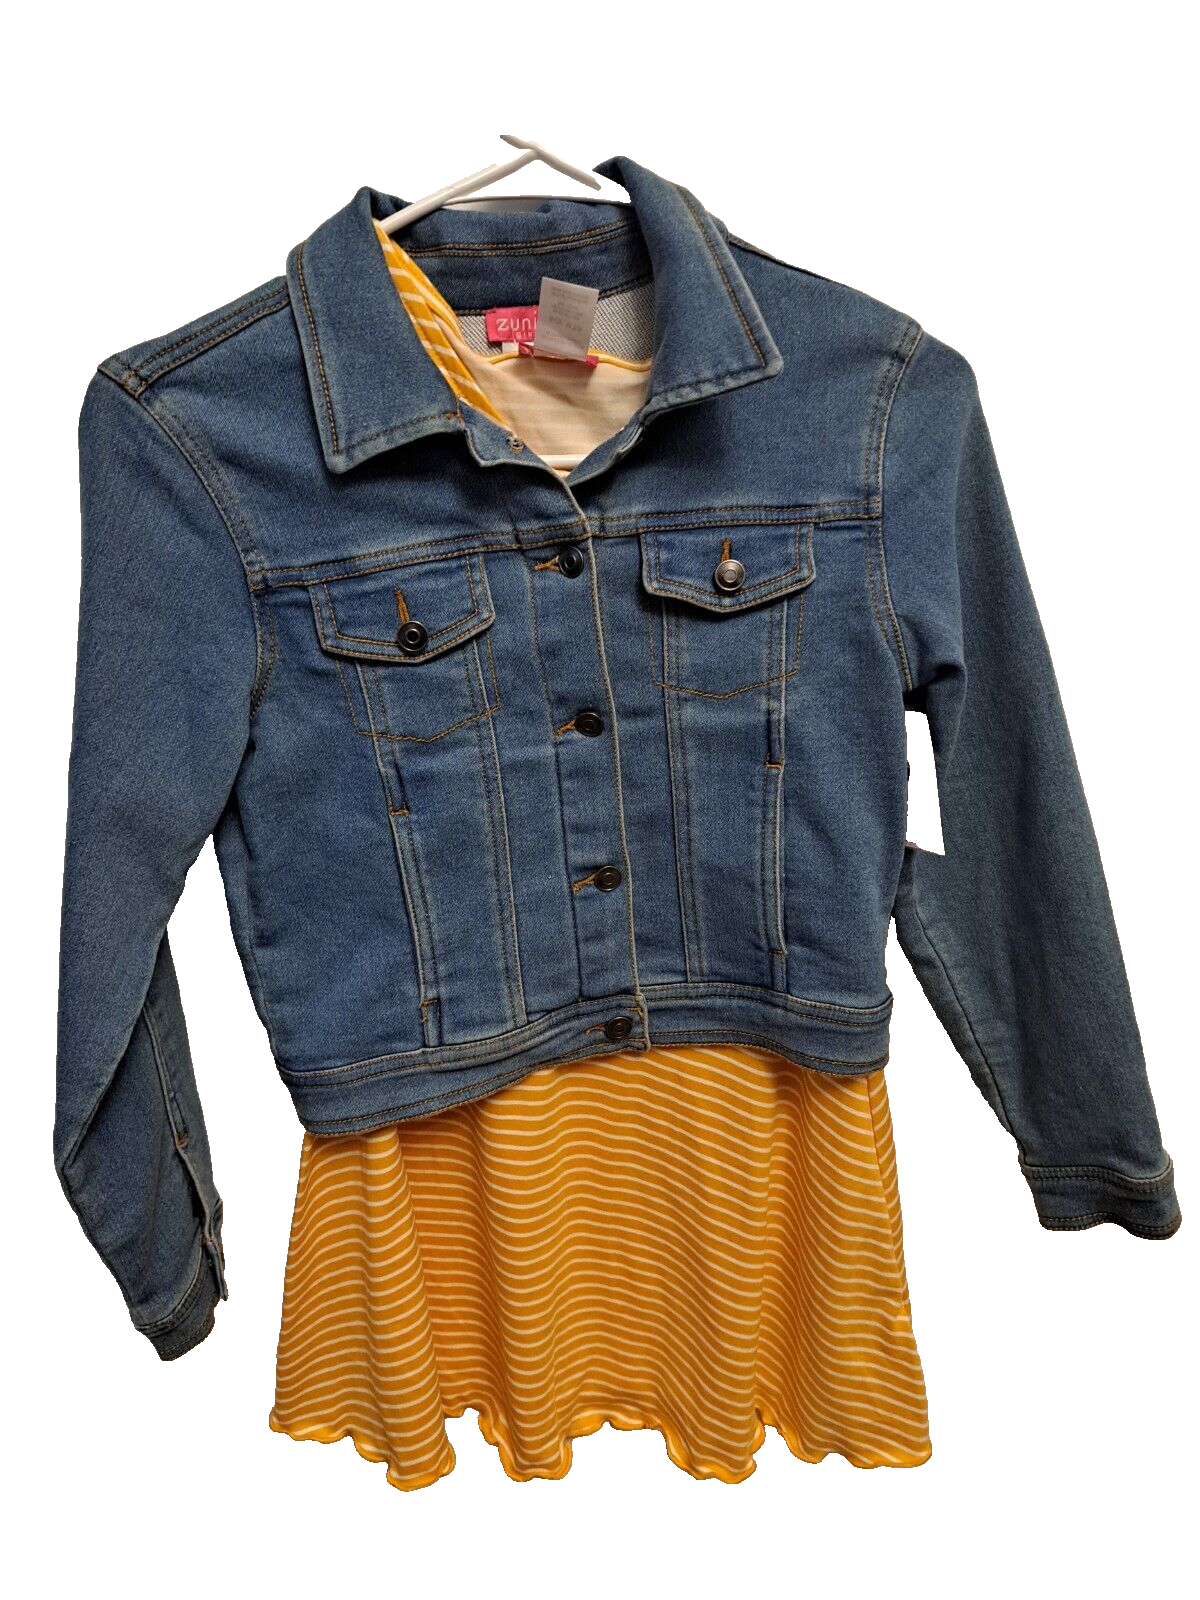 Girls Dress & Denim Jacket Two Piece set Soft Size 7/8 NEW ZUNIE GIRL zunie girl - фотография #2